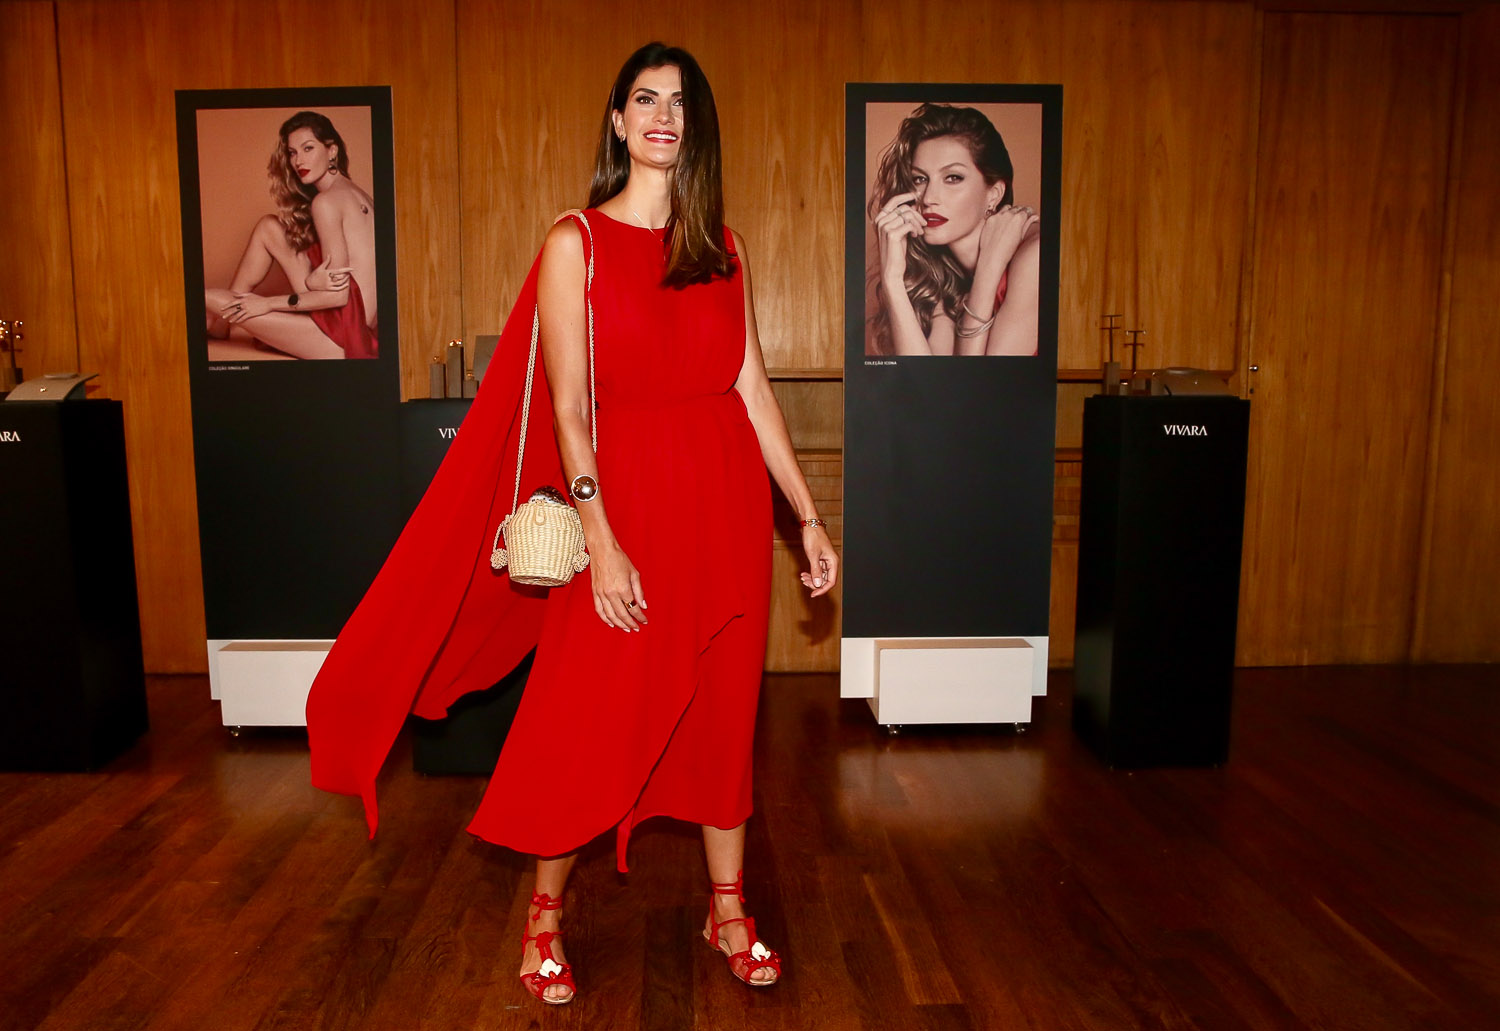 Isabella Fiorentino aposta em lindo look vermelho para evento